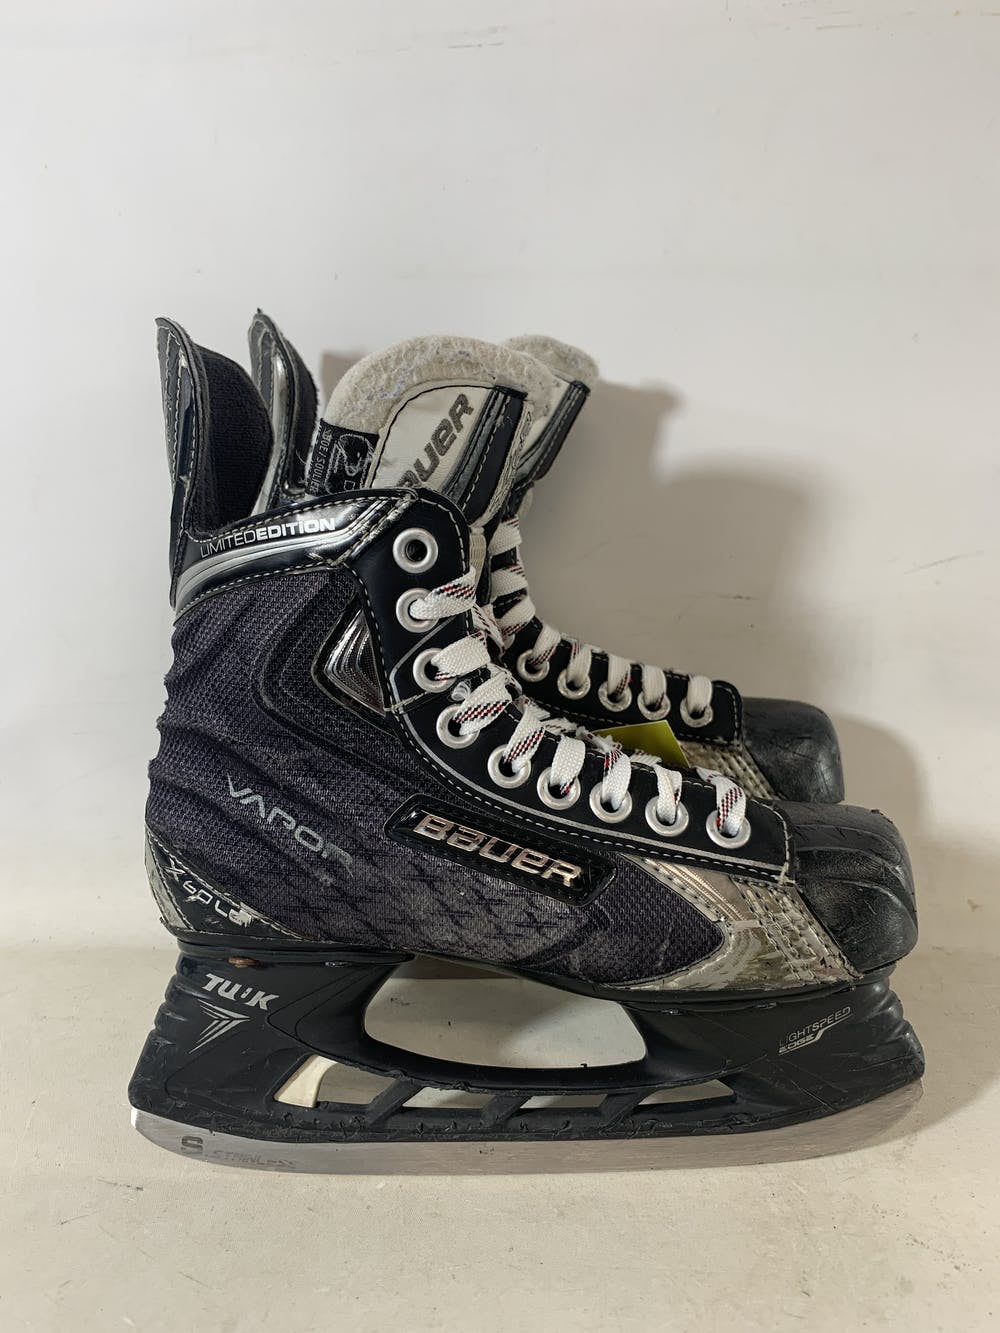 Used Bauer Vapor X60 LE Ice Hockey Skates Size 2